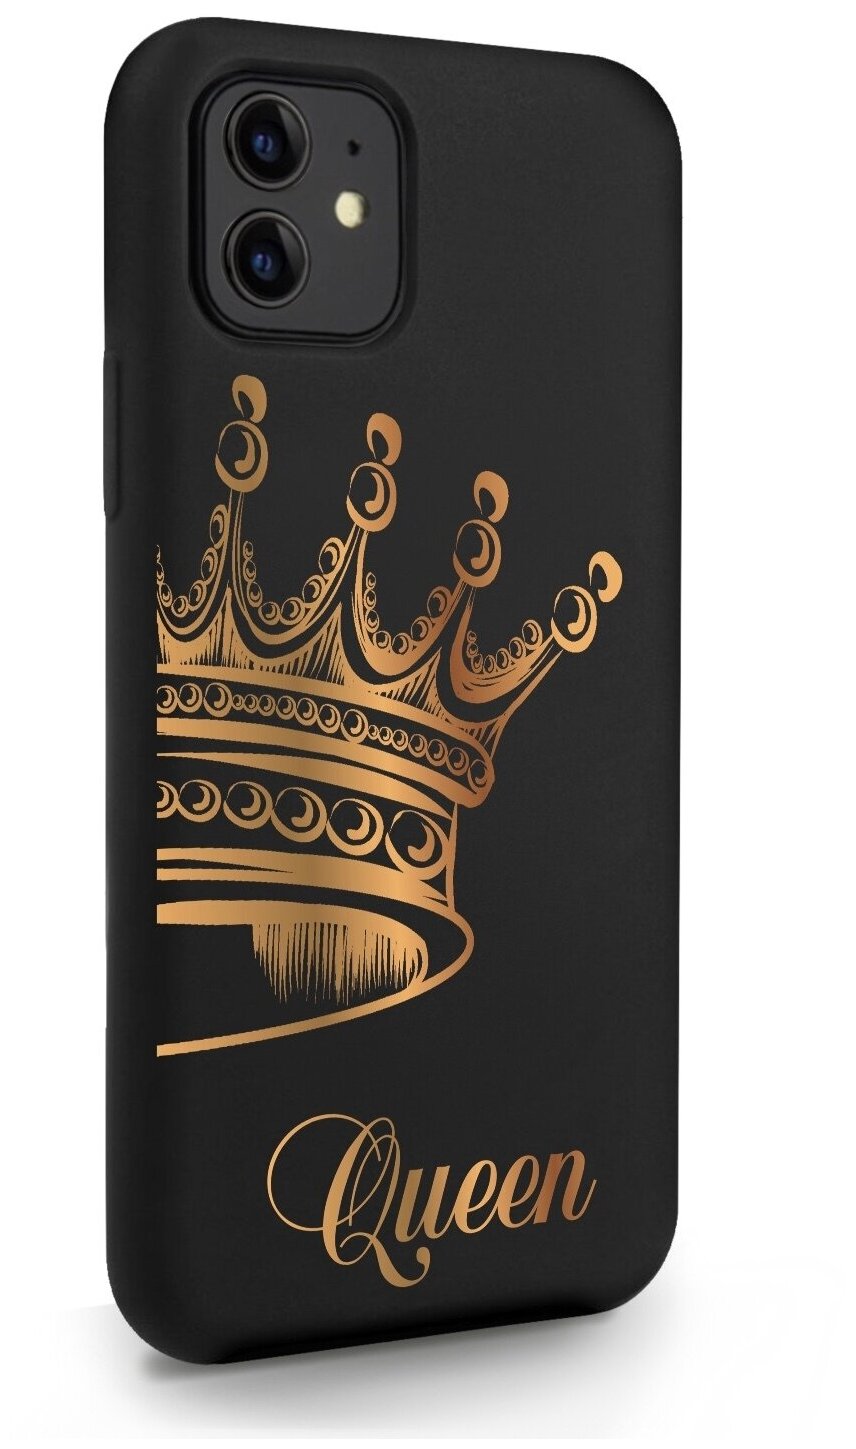 Черный силиконовый чехол MustHaveCase для iPhone 11 Парный чехол корона Queen для Айфон 11